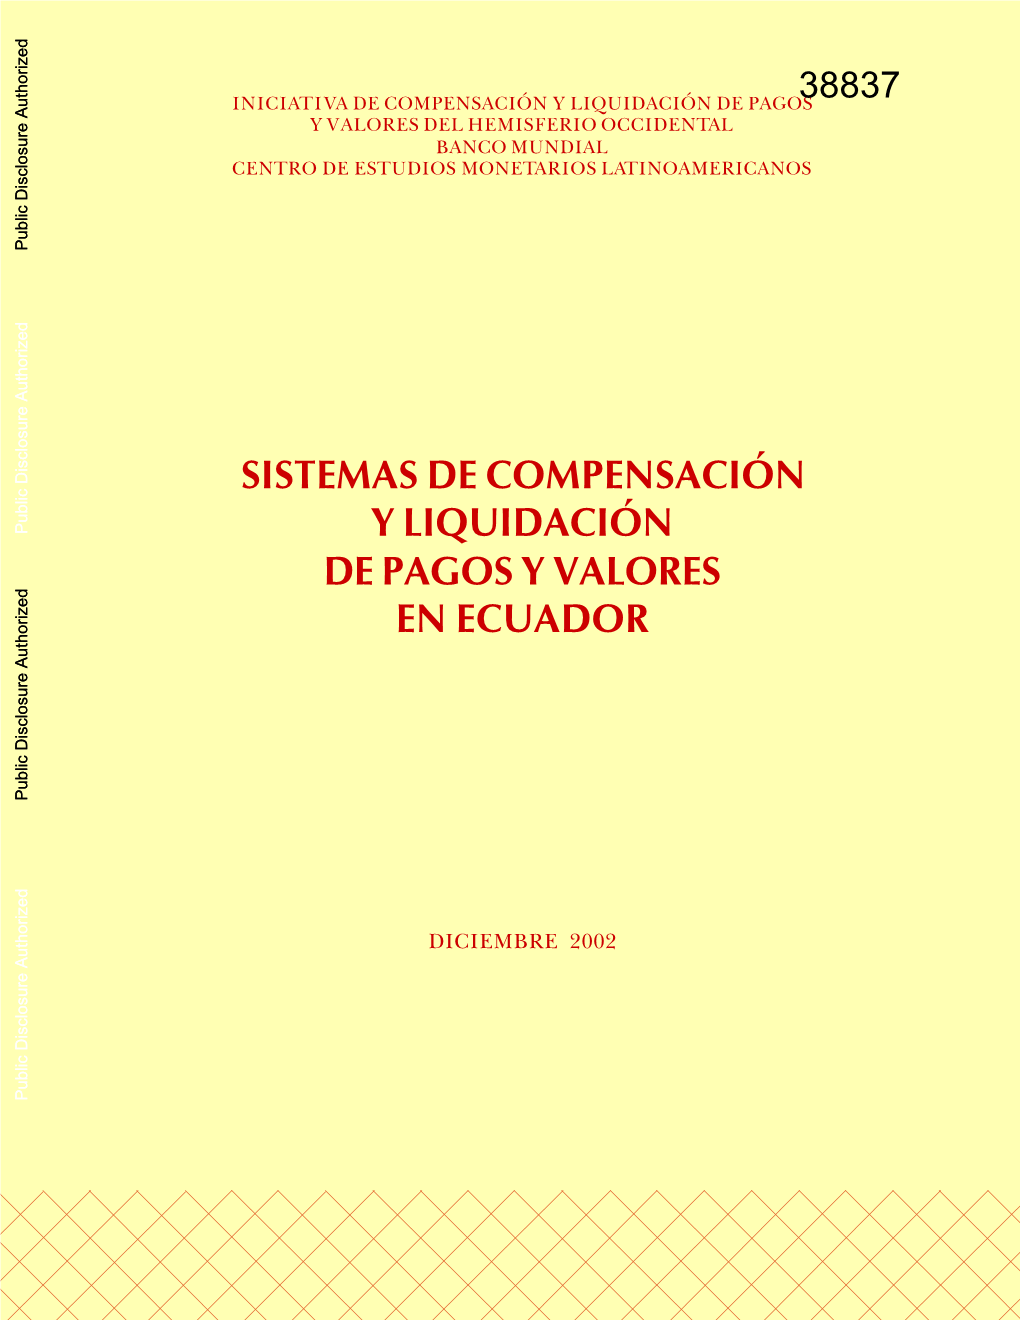 Sistemas De Compensación Y Liquidación De Pagos Y Valores En Ecuador Sistemas De Compensación Y Liquidación De Pagos Y Valores En Ecuador